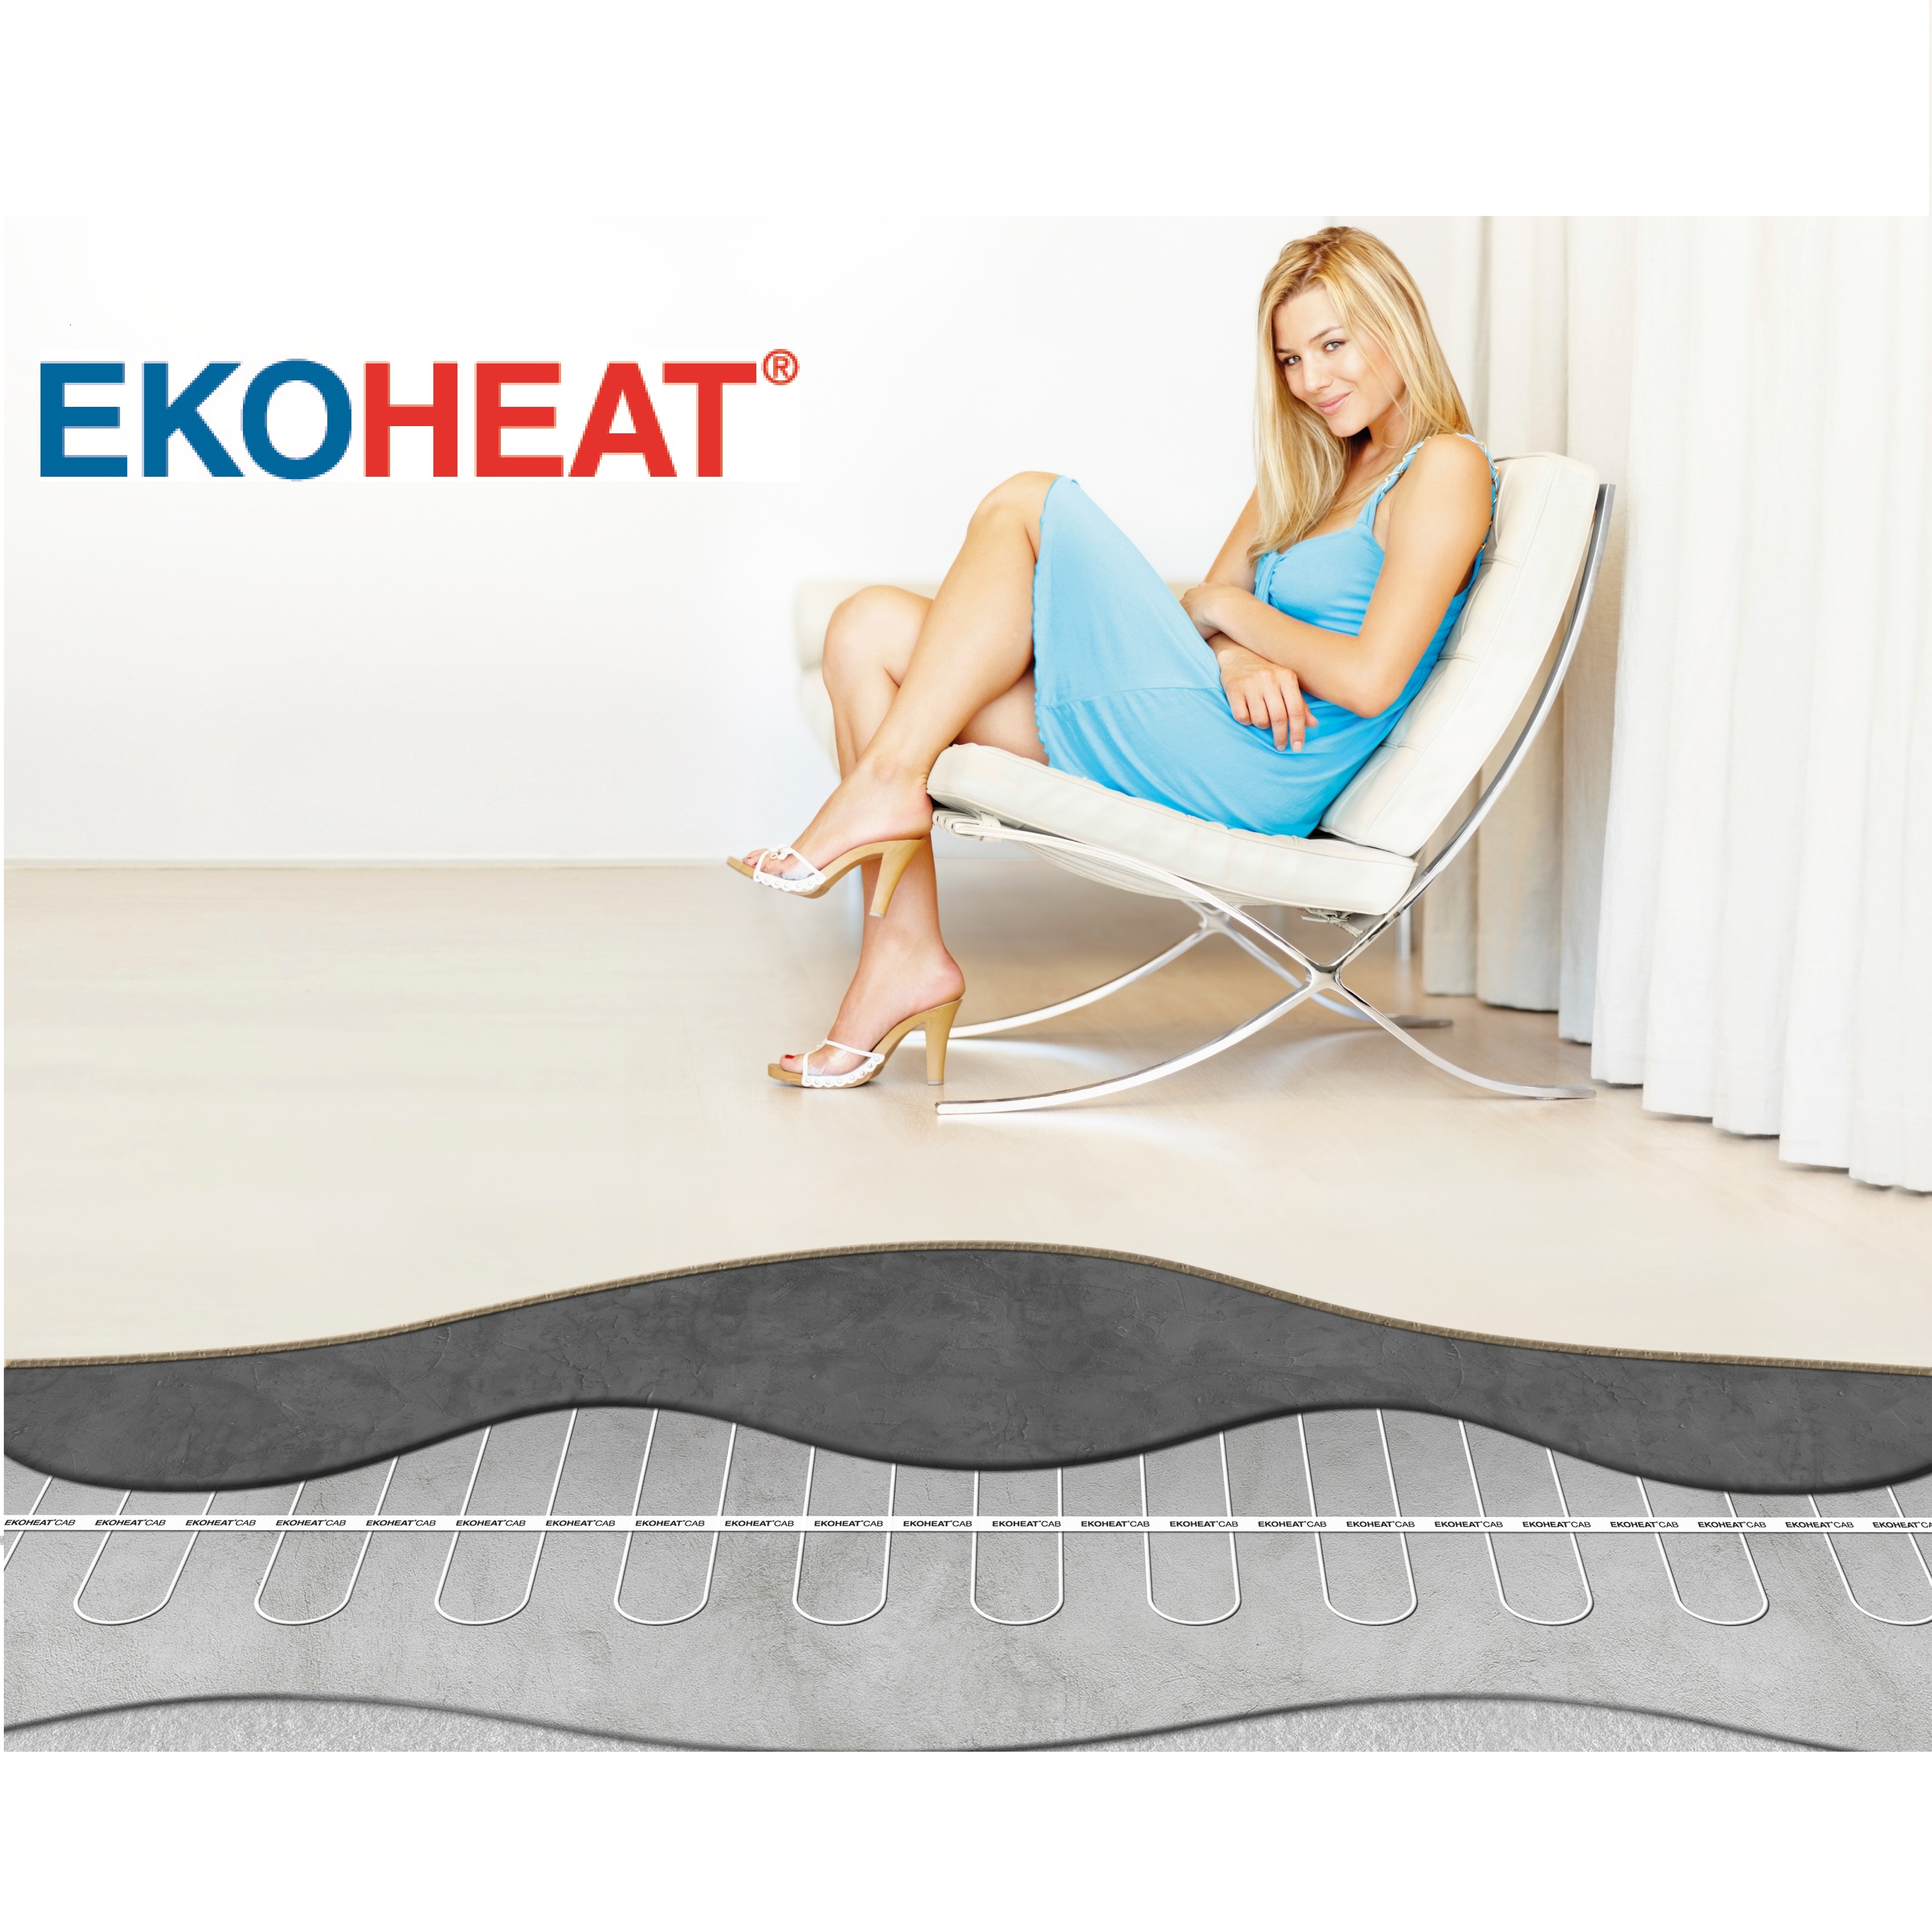 Elektrické podlahové vytápění systémem EKOHEAT